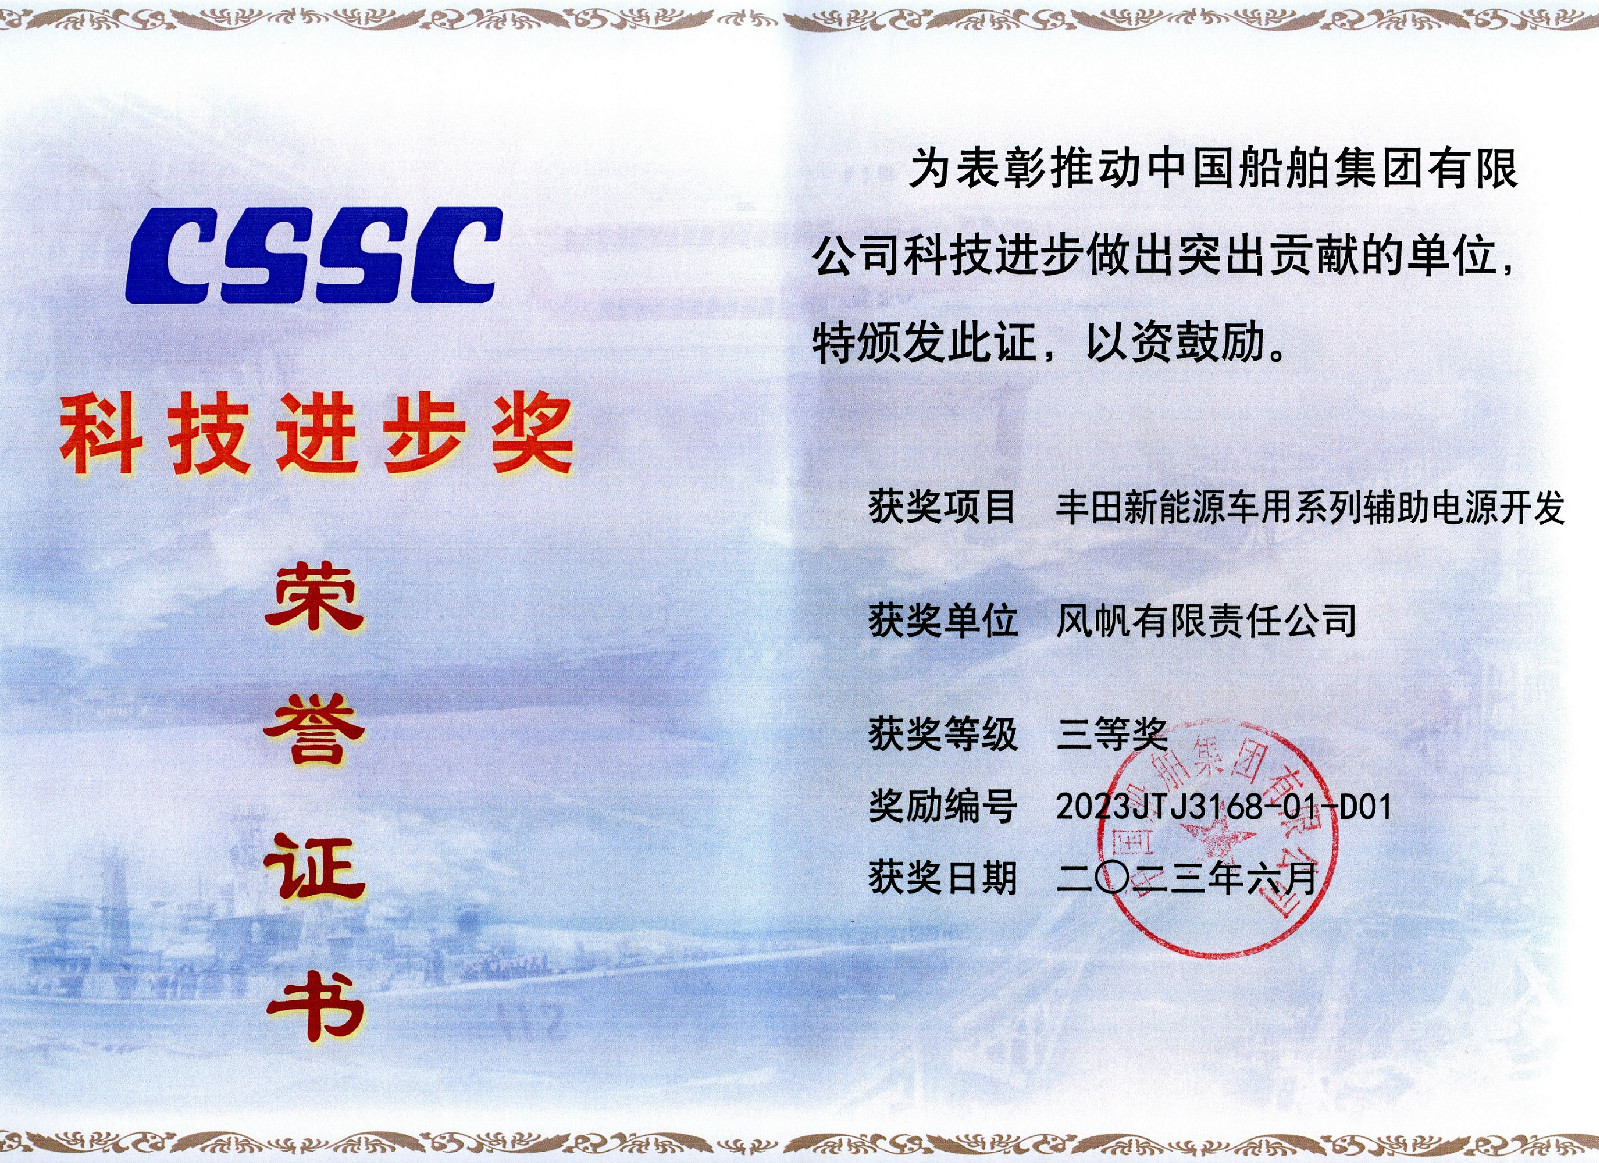 风帆丰田项目荣获中国船舶集团科技进步三等奖